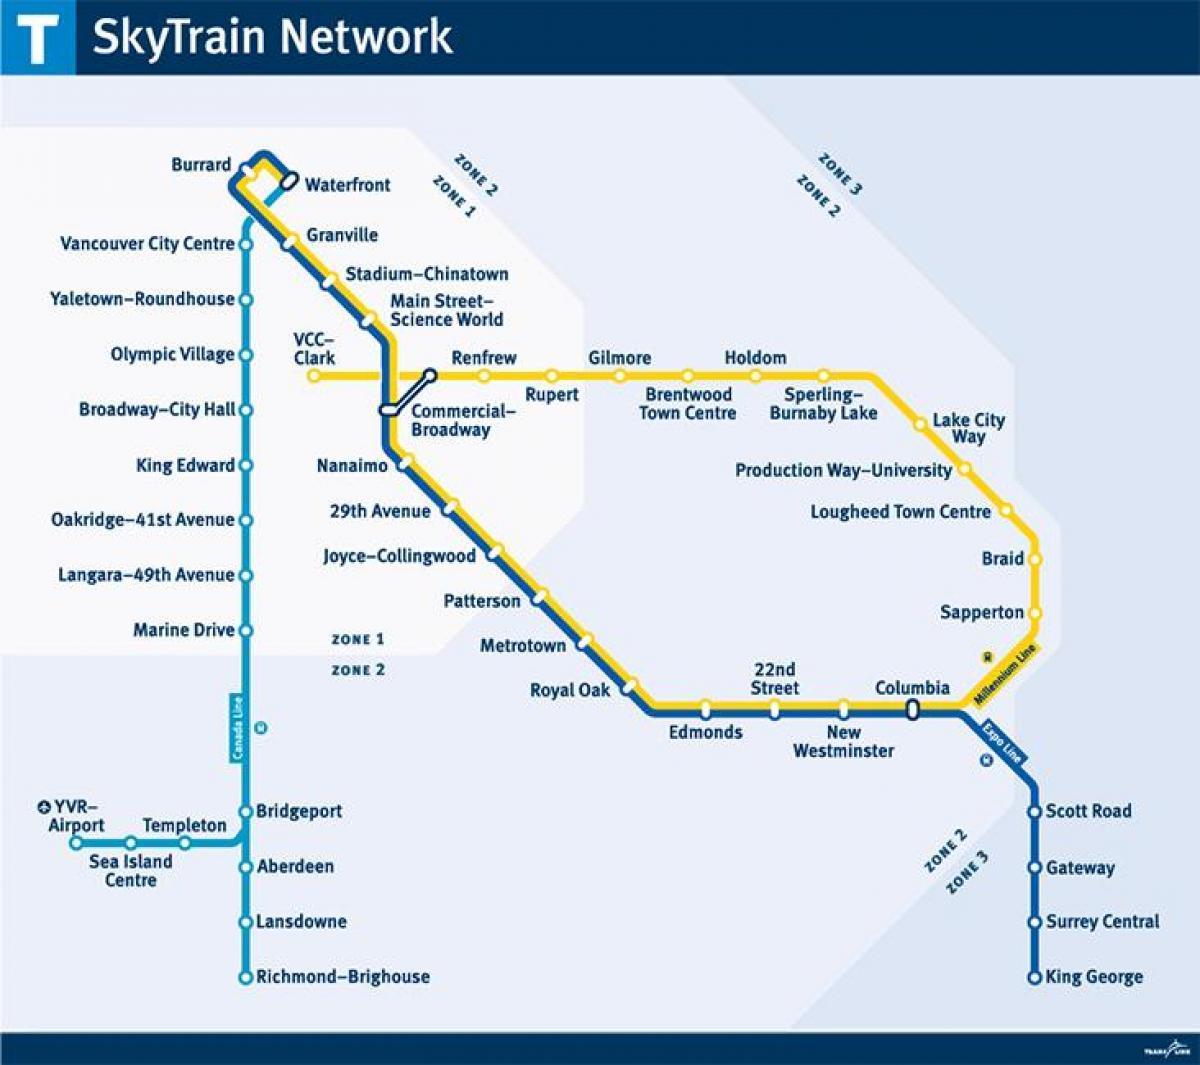 skytrain লাইন মানচিত্র